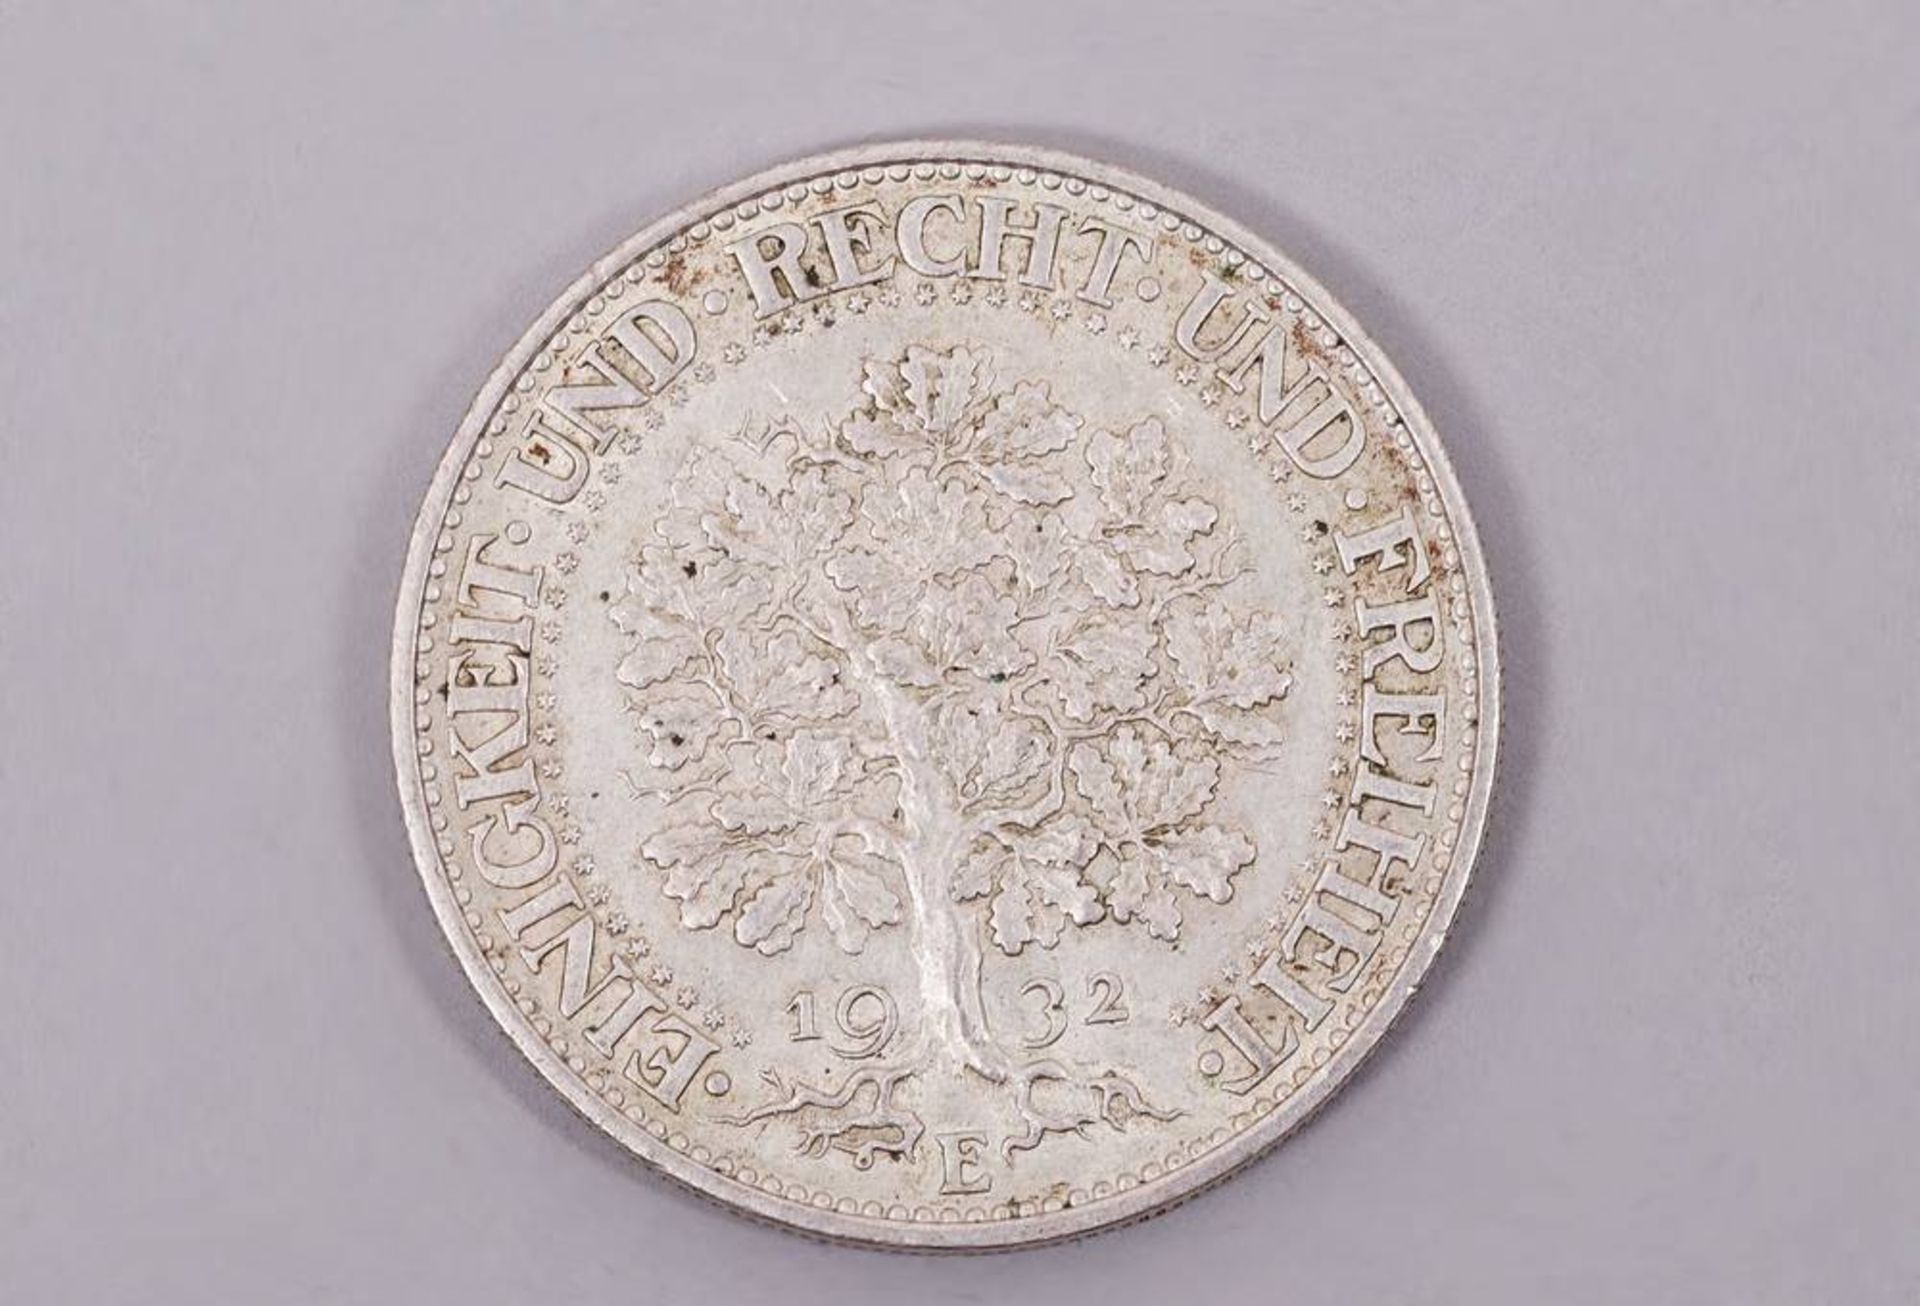 5 Reichsmark 1932 E